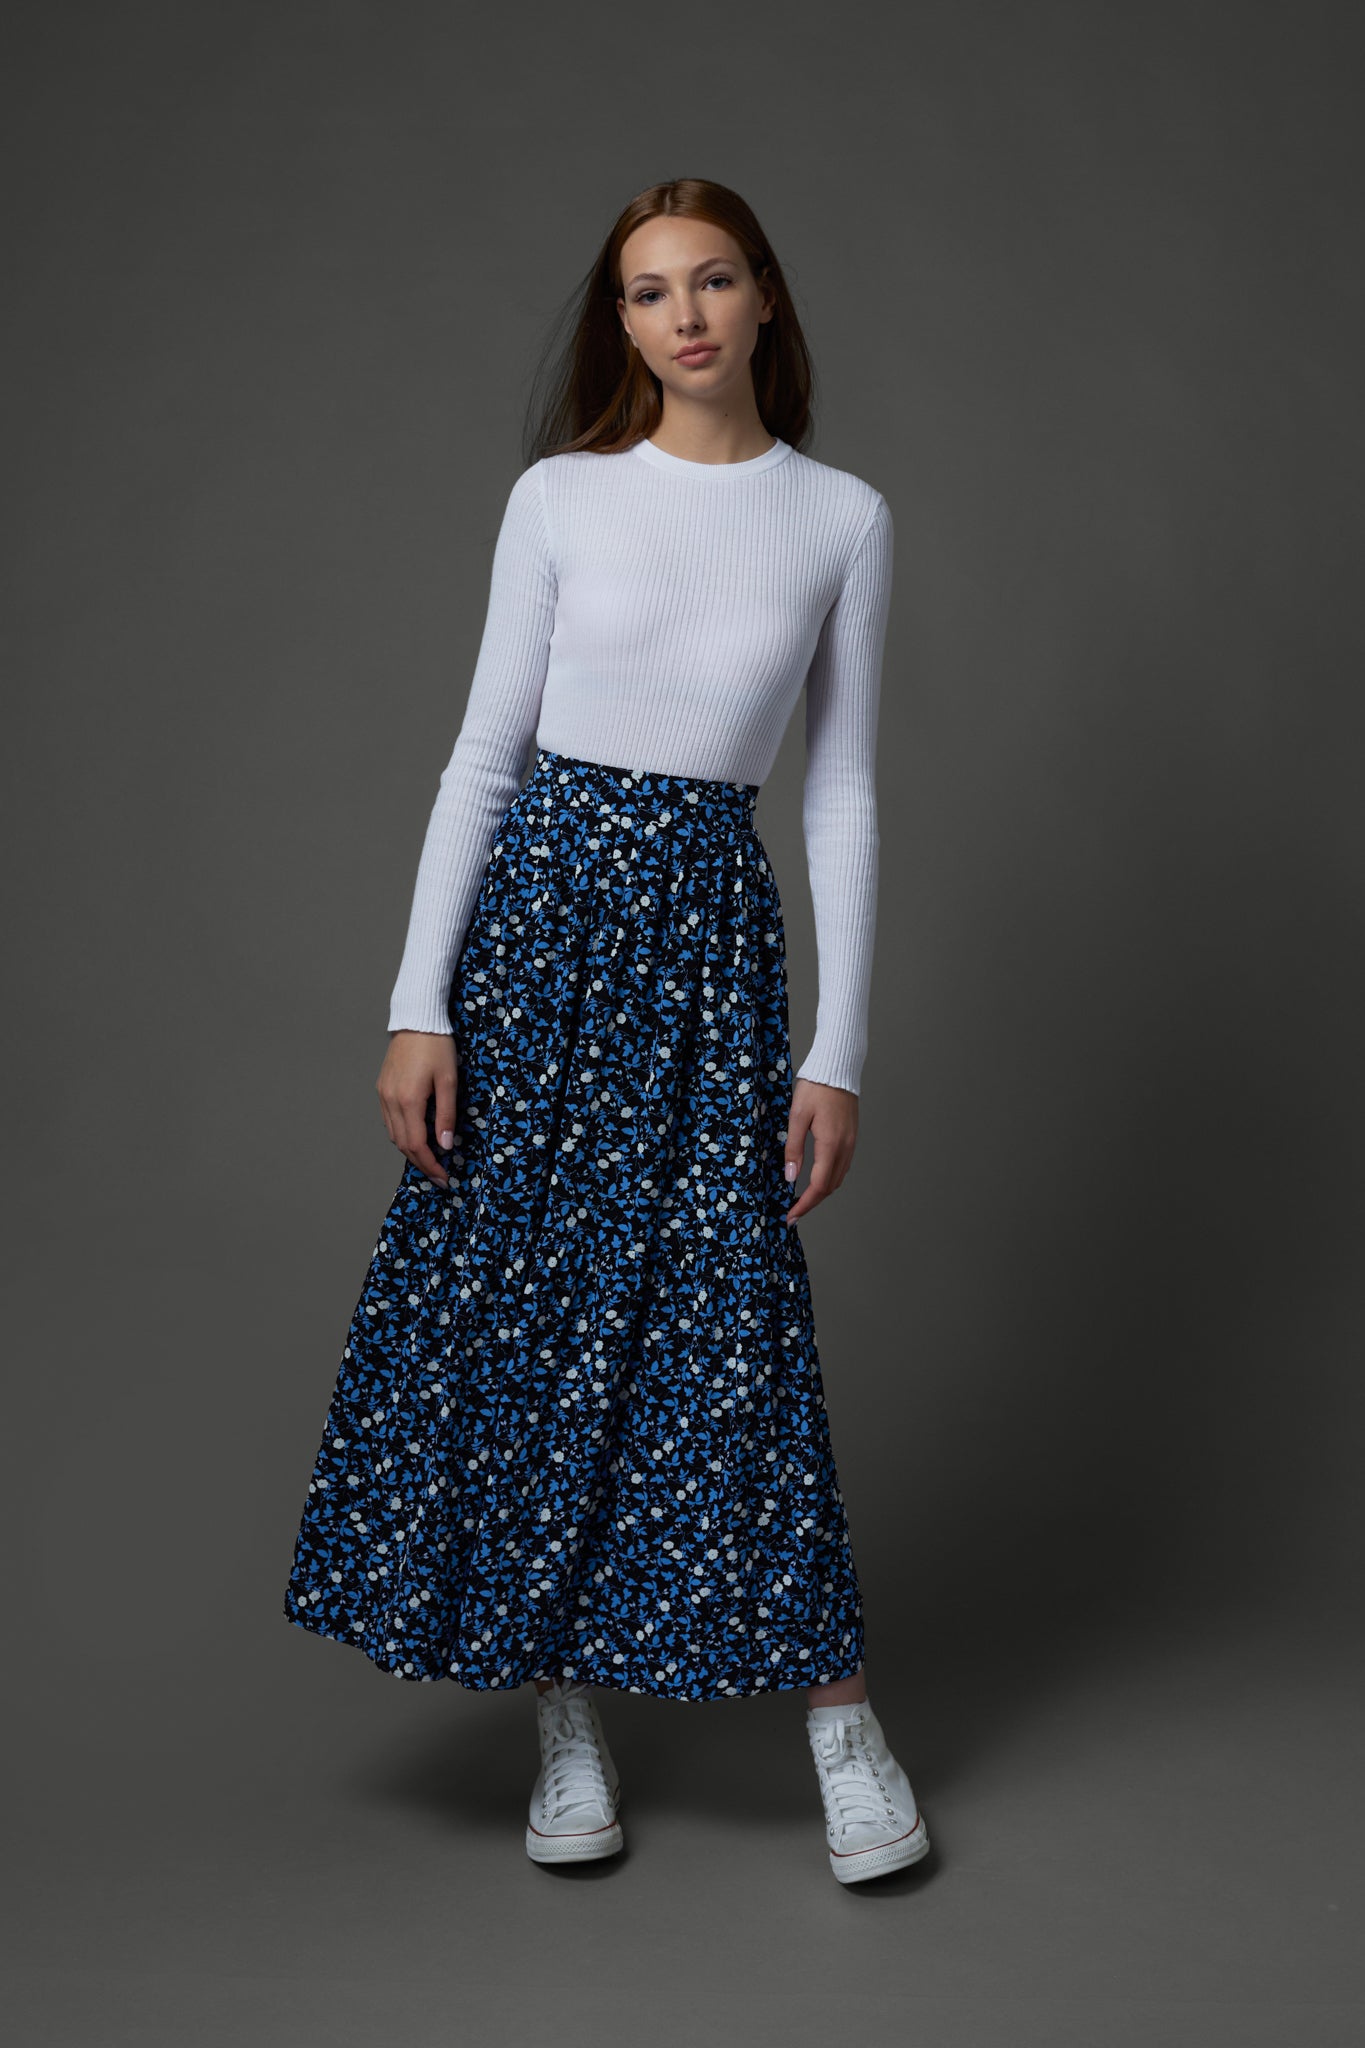 Isabelle Skirt in Blue Flower #7952B